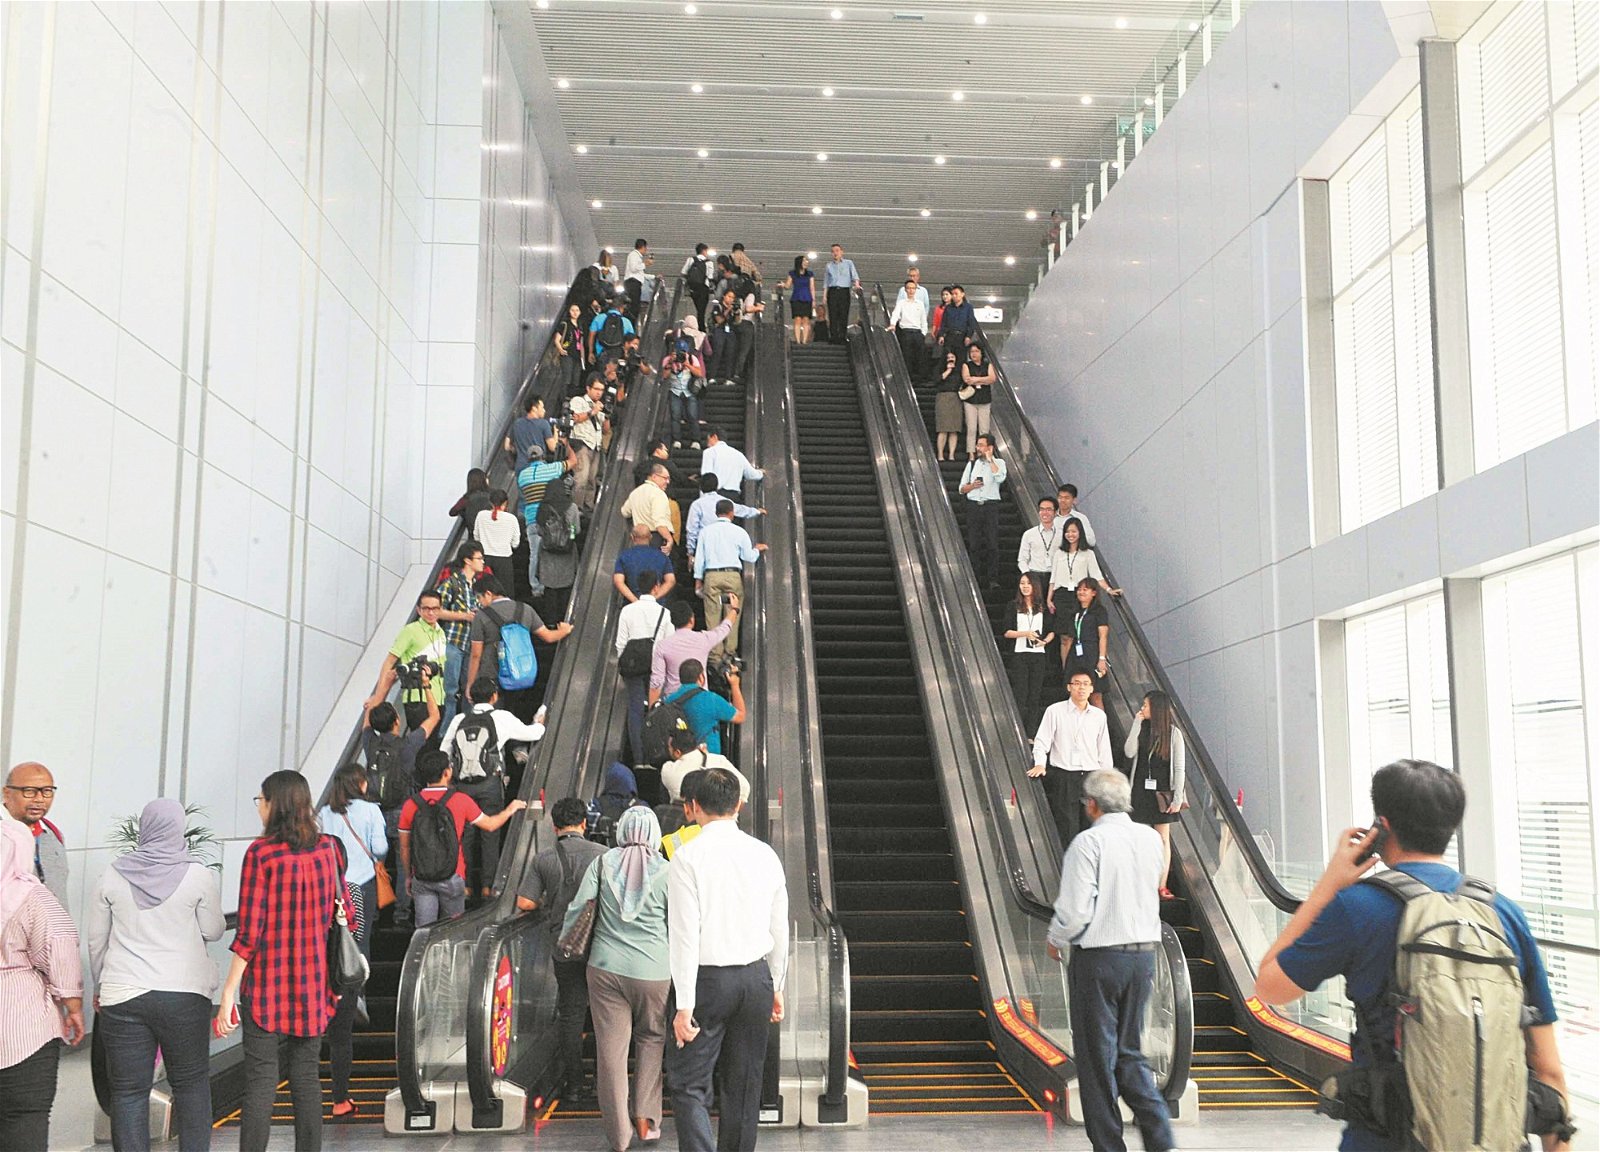 衔接吉隆坡中环的国家博物馆站，是衔接最多公交系统的捷运站，惟搭客需走上5至10分钟的地下隧道或有盖走道，约4至6个电扶梯（视乎目的地）。（摄影：邱继贤）